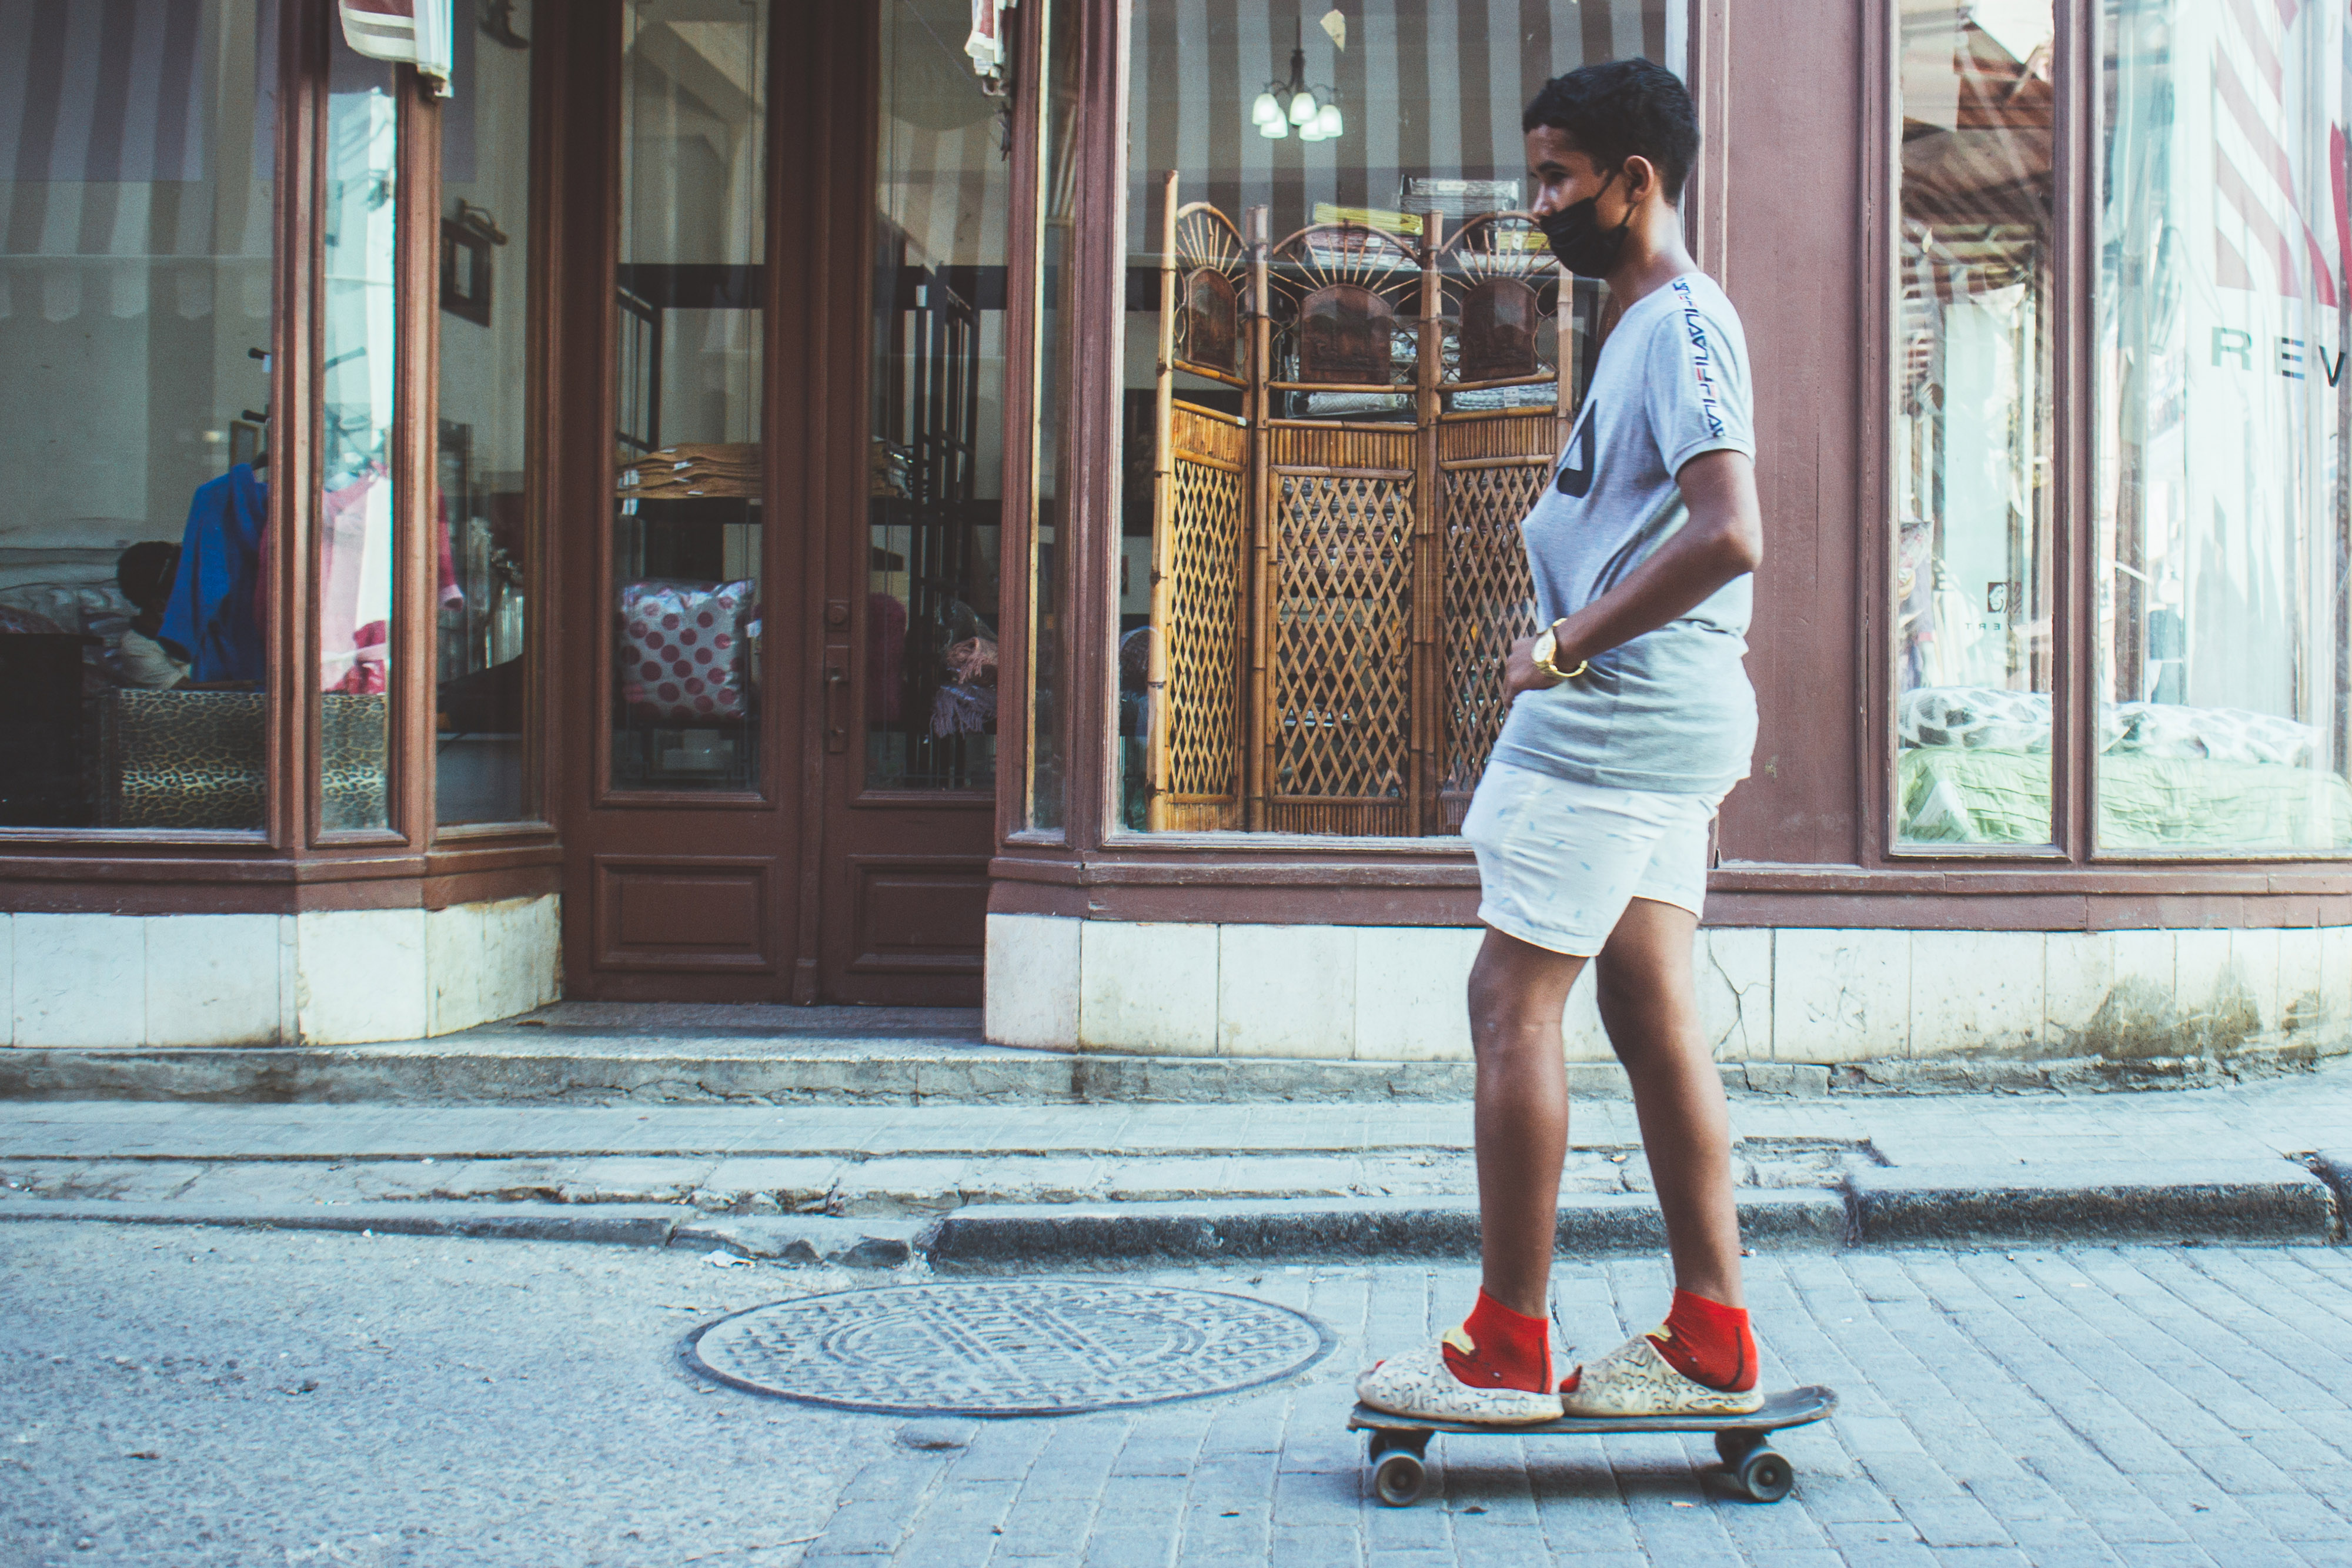 Skateboards in Havana